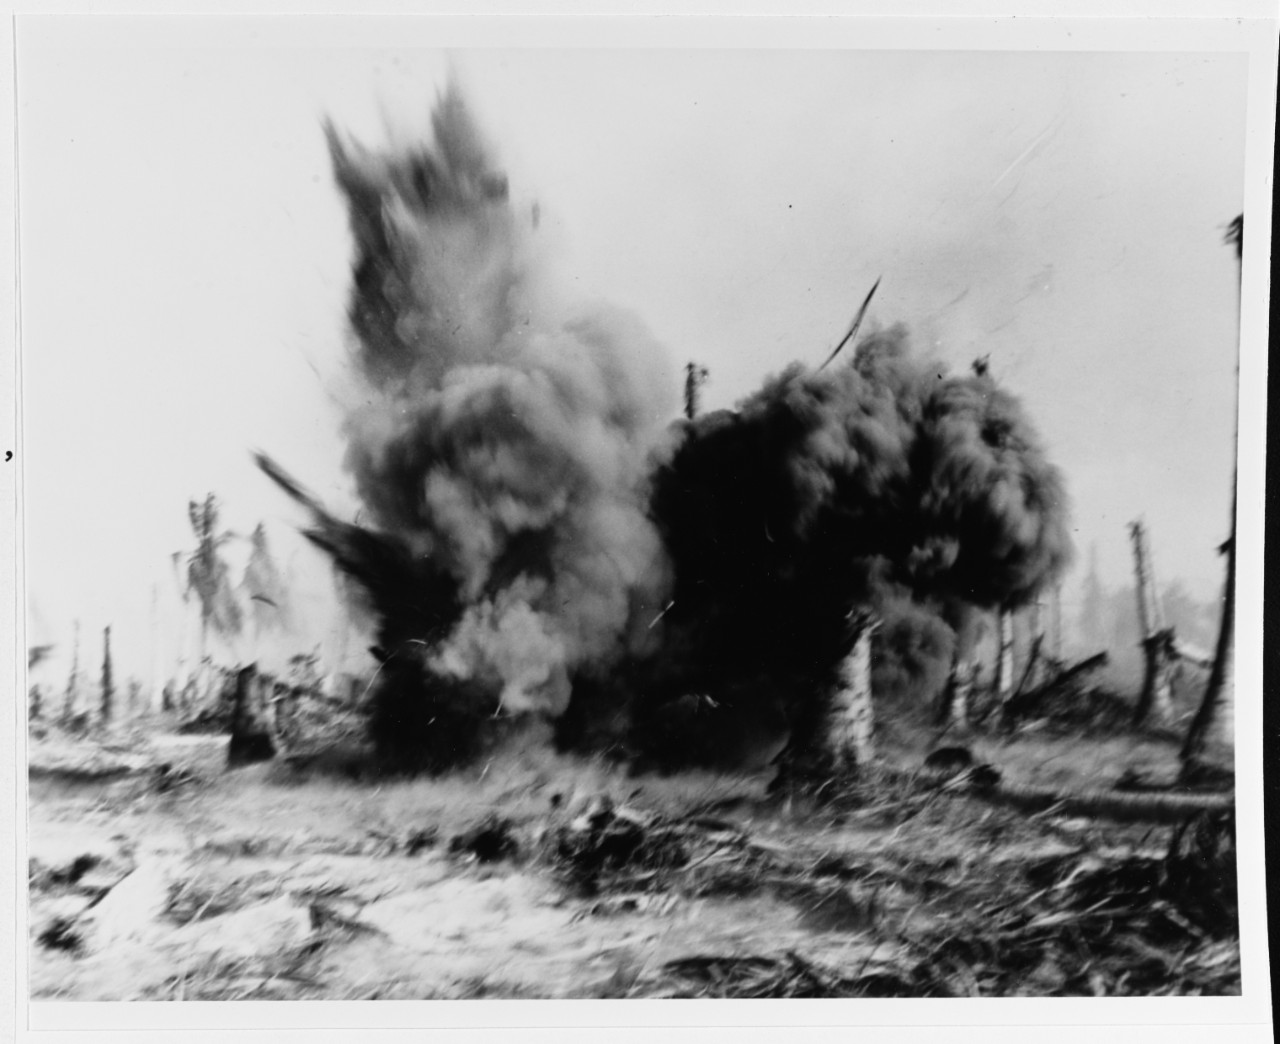 Eniwetok Operation, February 1944.